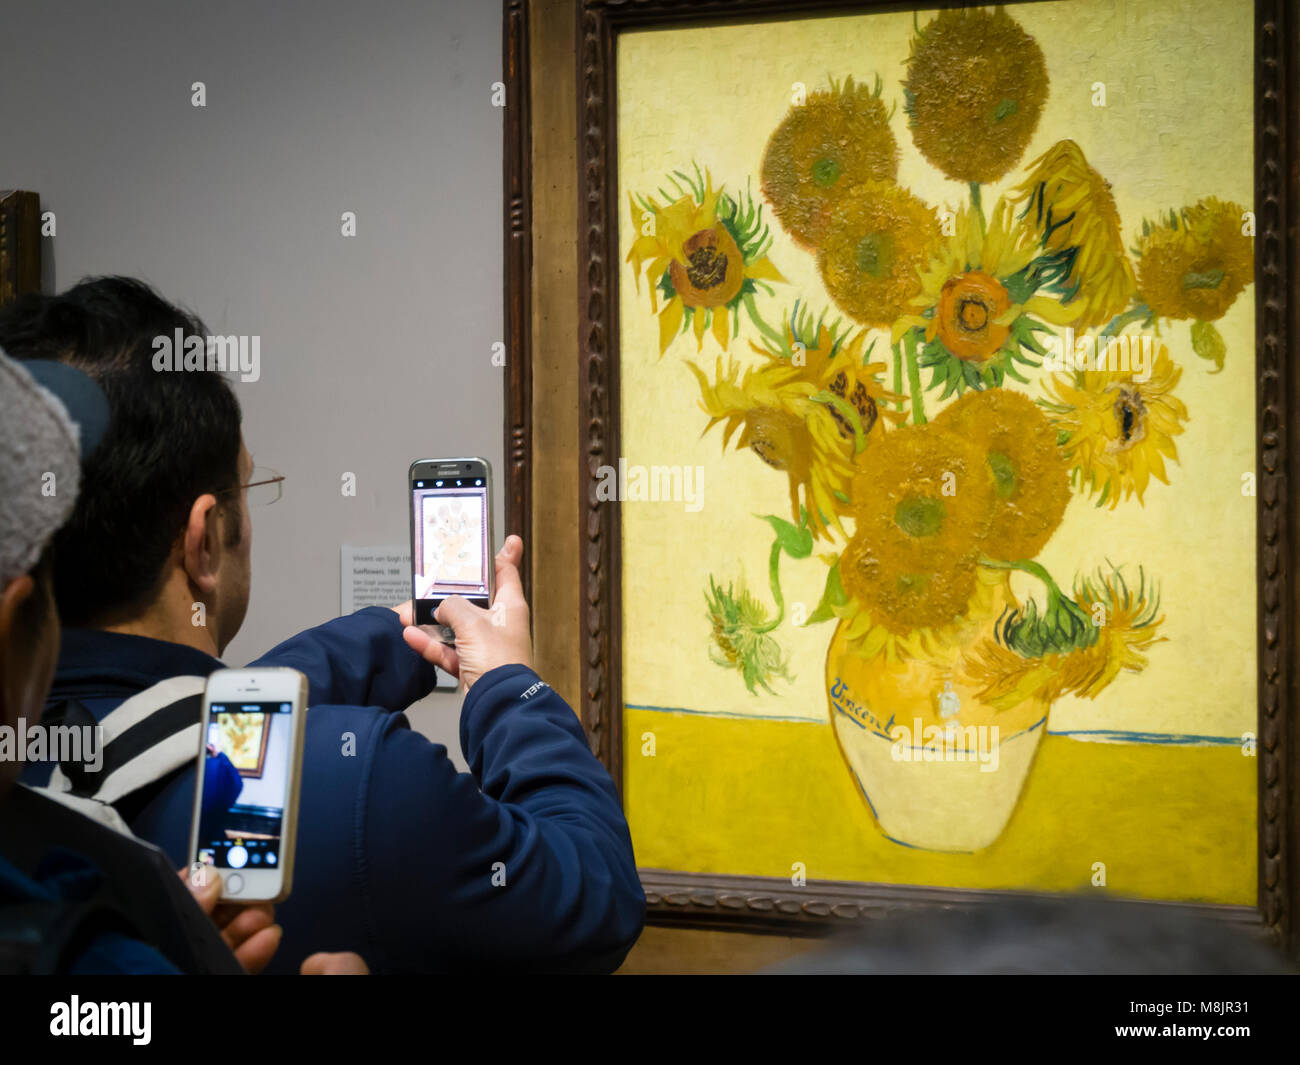 Londres, Royaume-Uni - 30 déc 2017 : les visiteurs de la National Gallery de Londres sont à l'aide de leur smartphone pour prendre des photos de Vincent van Gogh peinture à l'huile "unflowers', l'une des plus célèbres pièces du musée. Banque D'Images